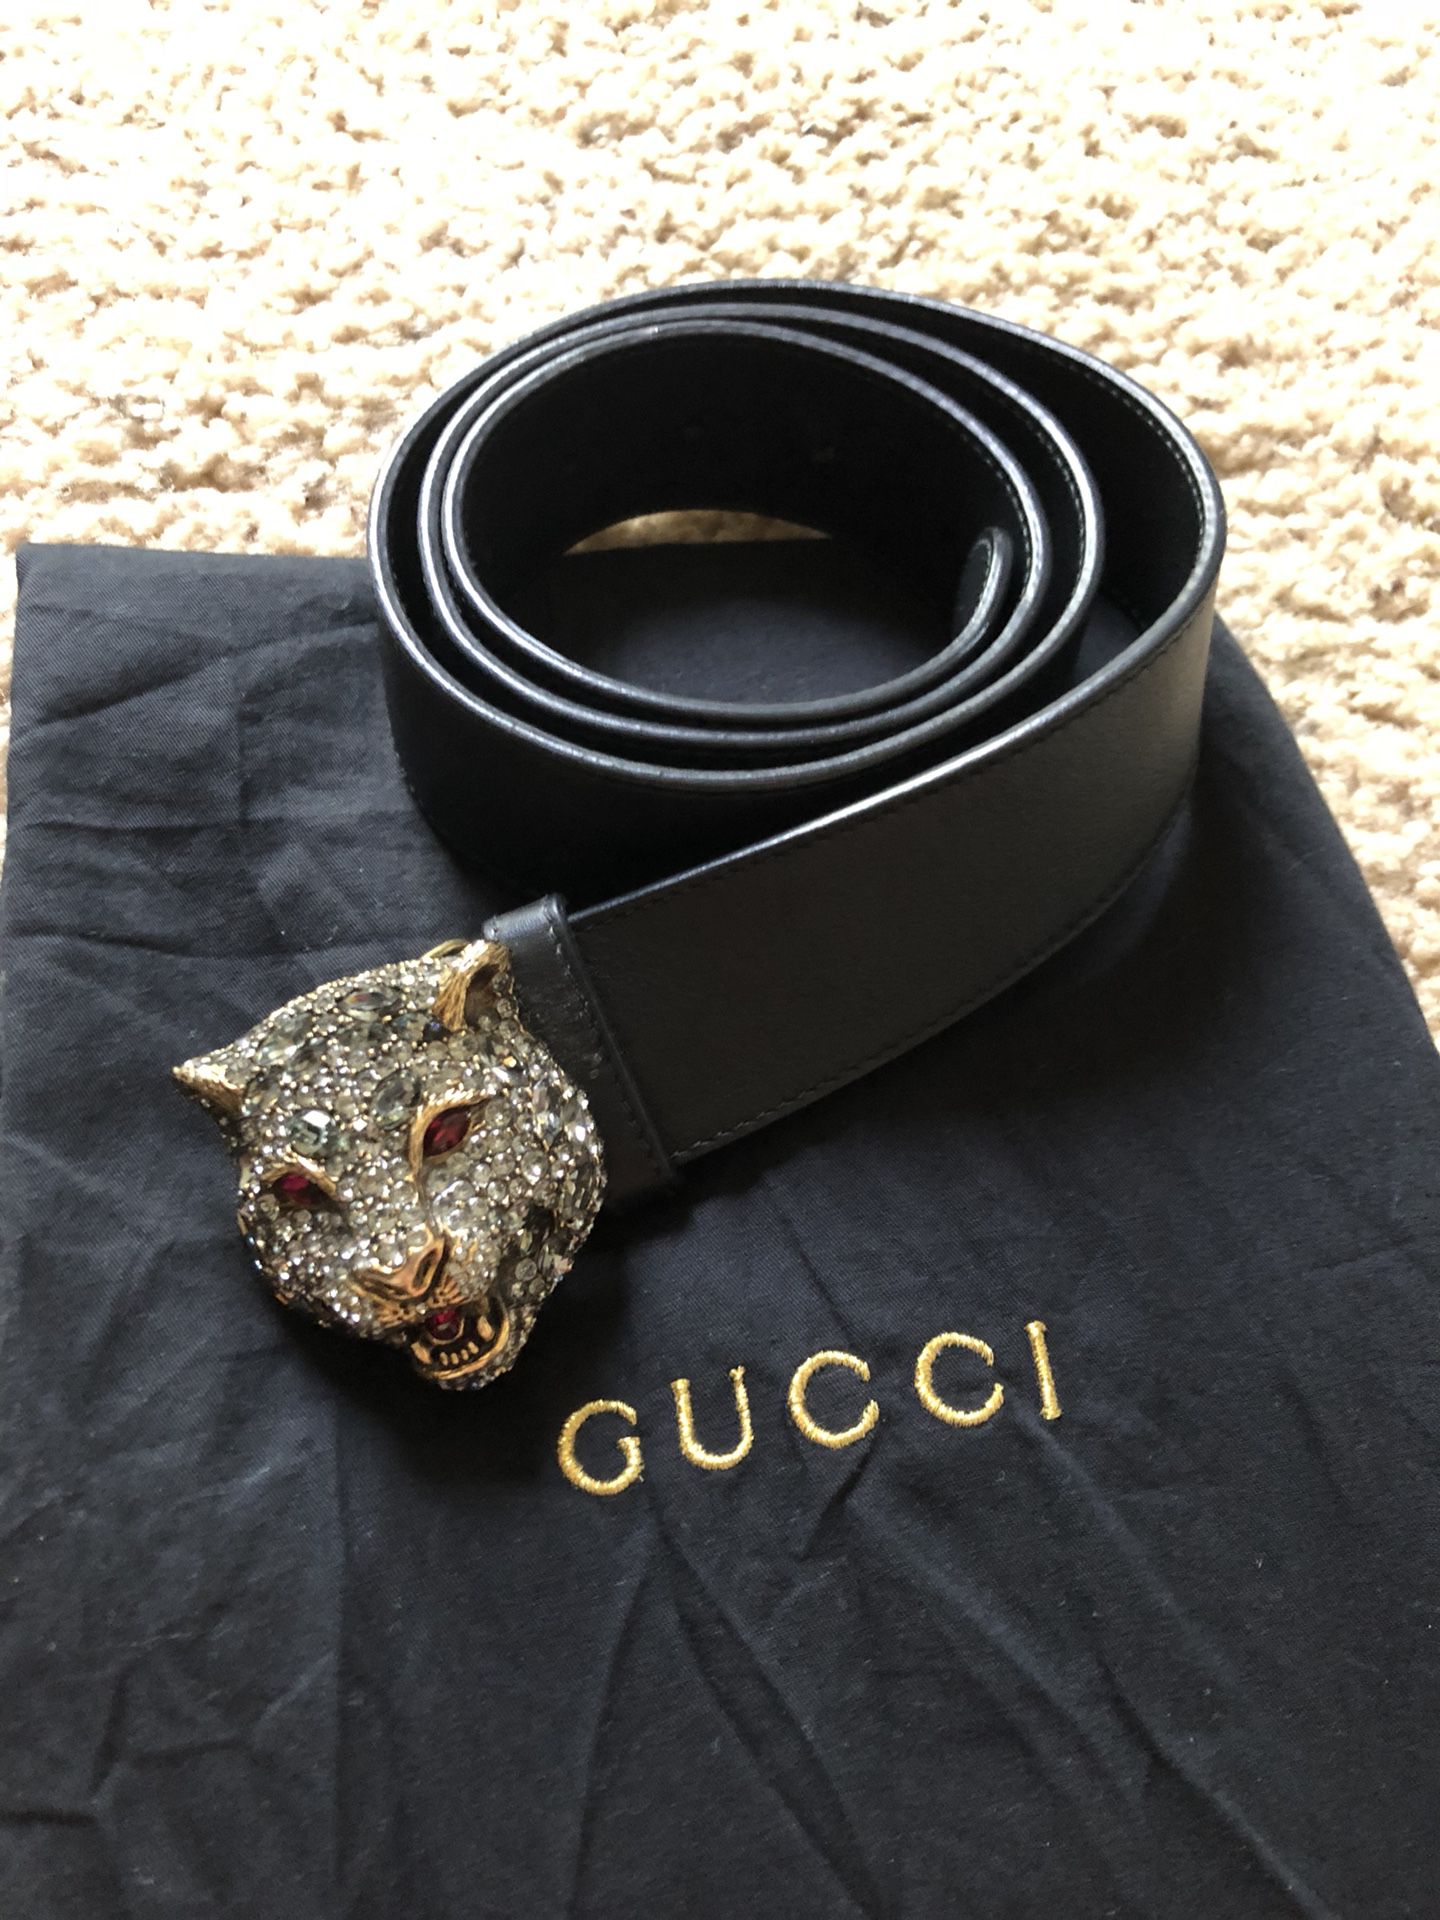 Gucci belt around head｜TikTok Search